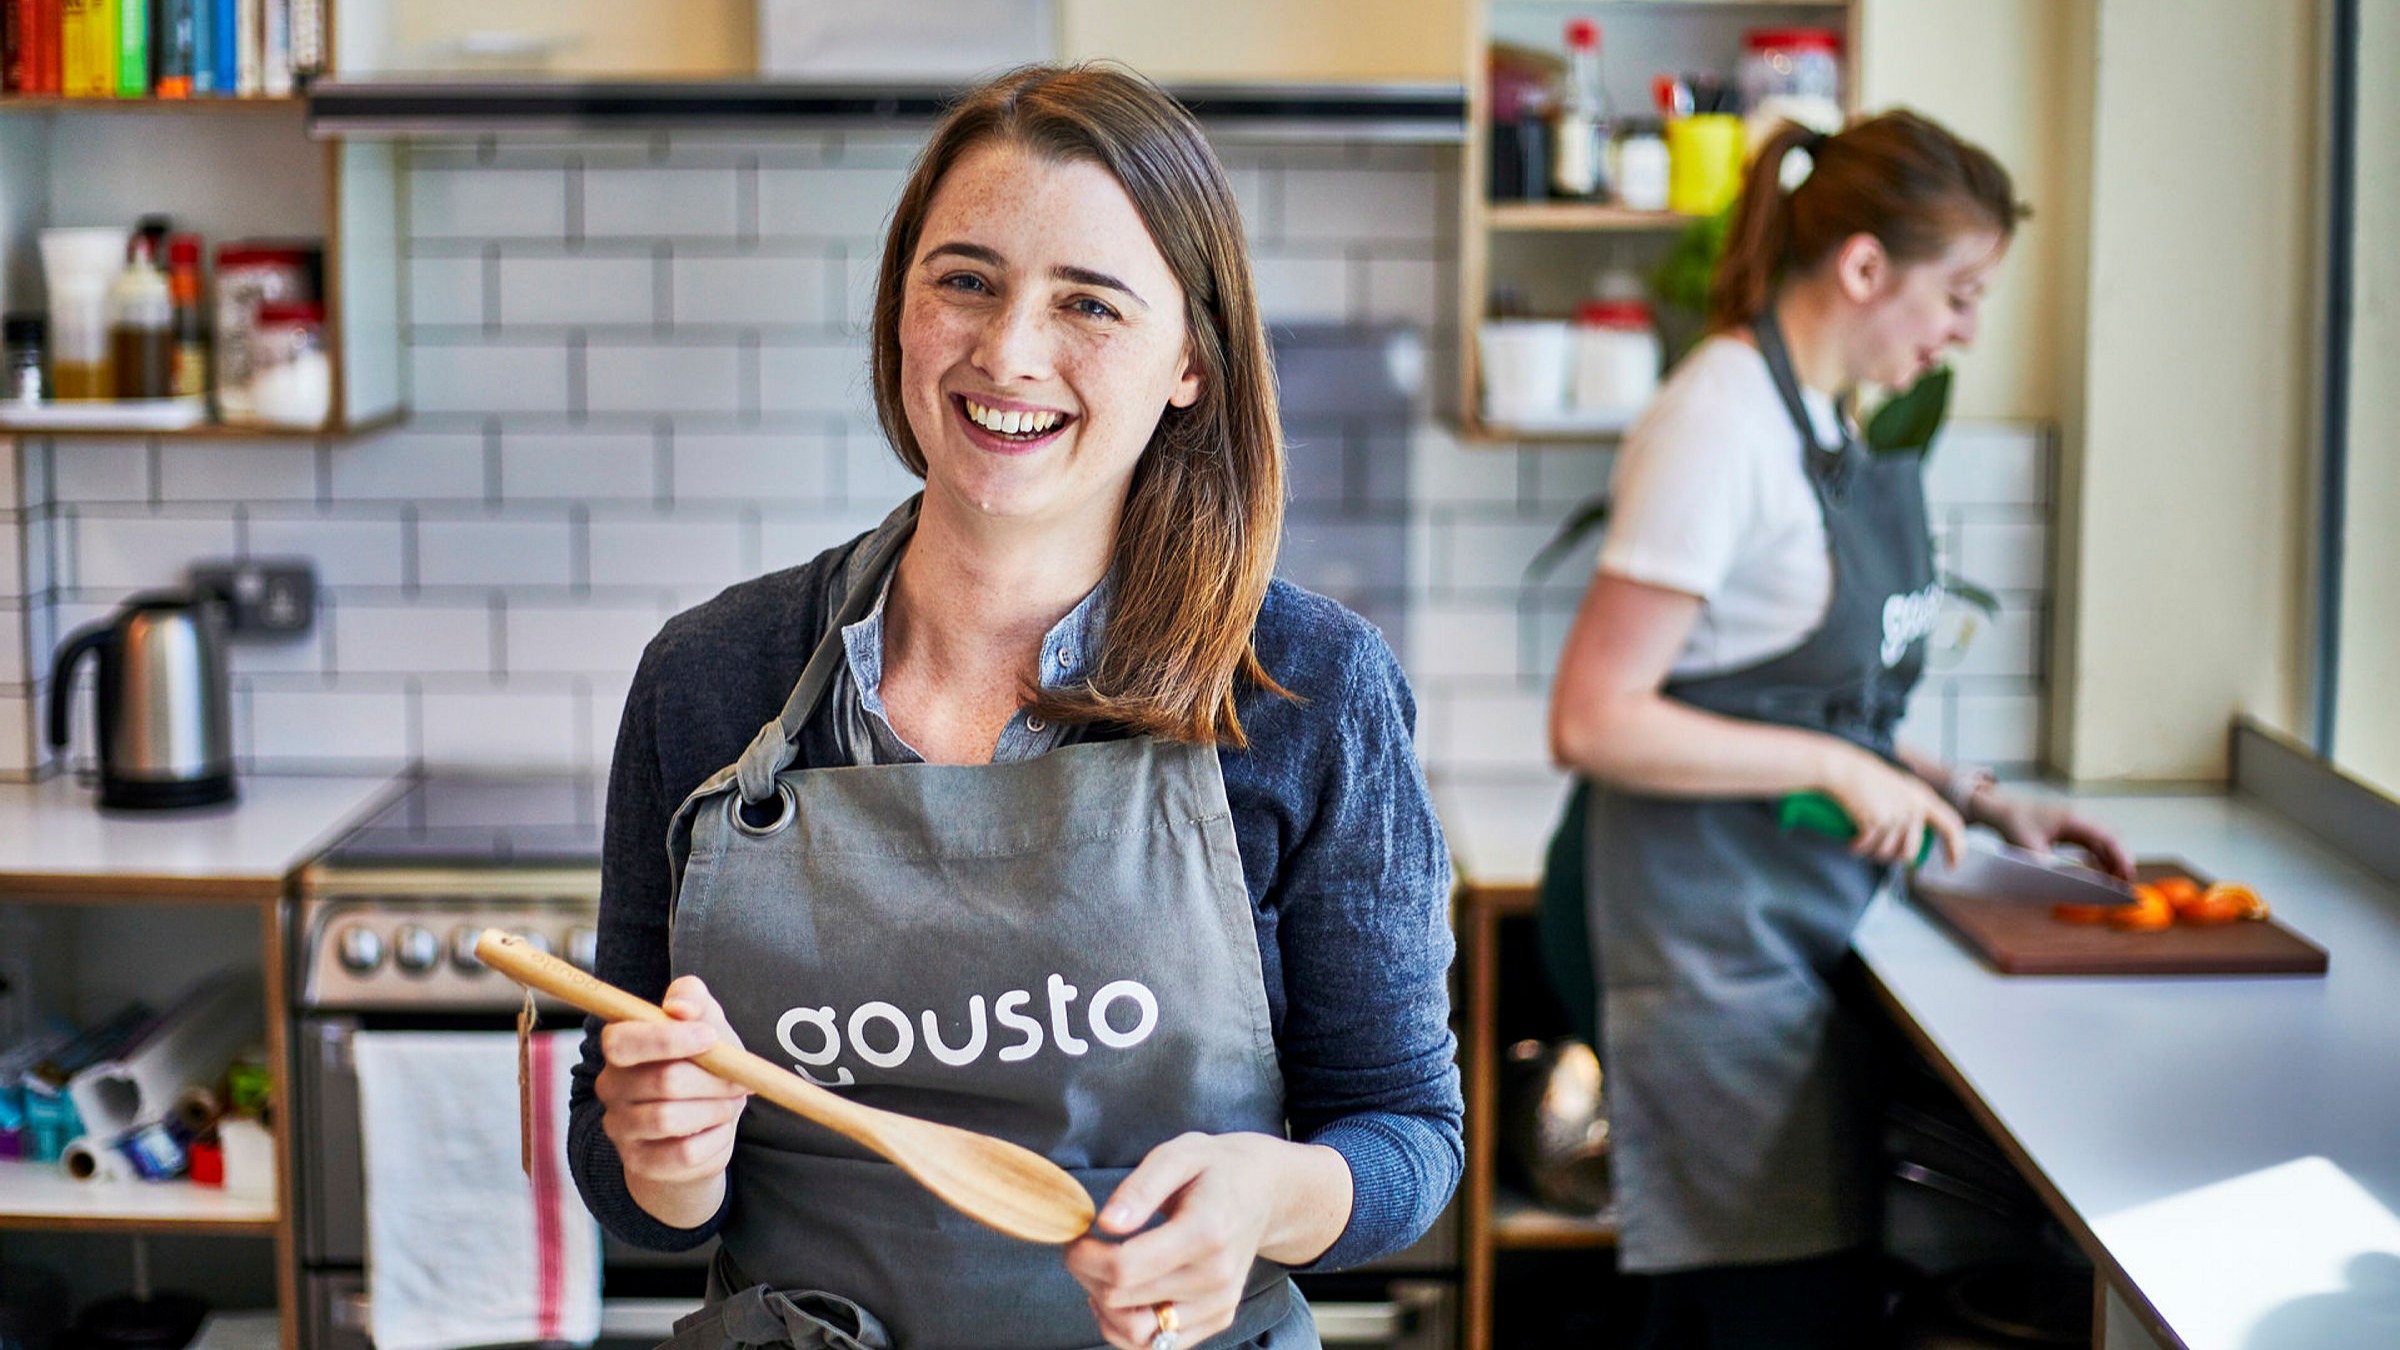 Matboksleverandøren Gousto skal rekruttere 1000 ekstra ansatte | Financial Times